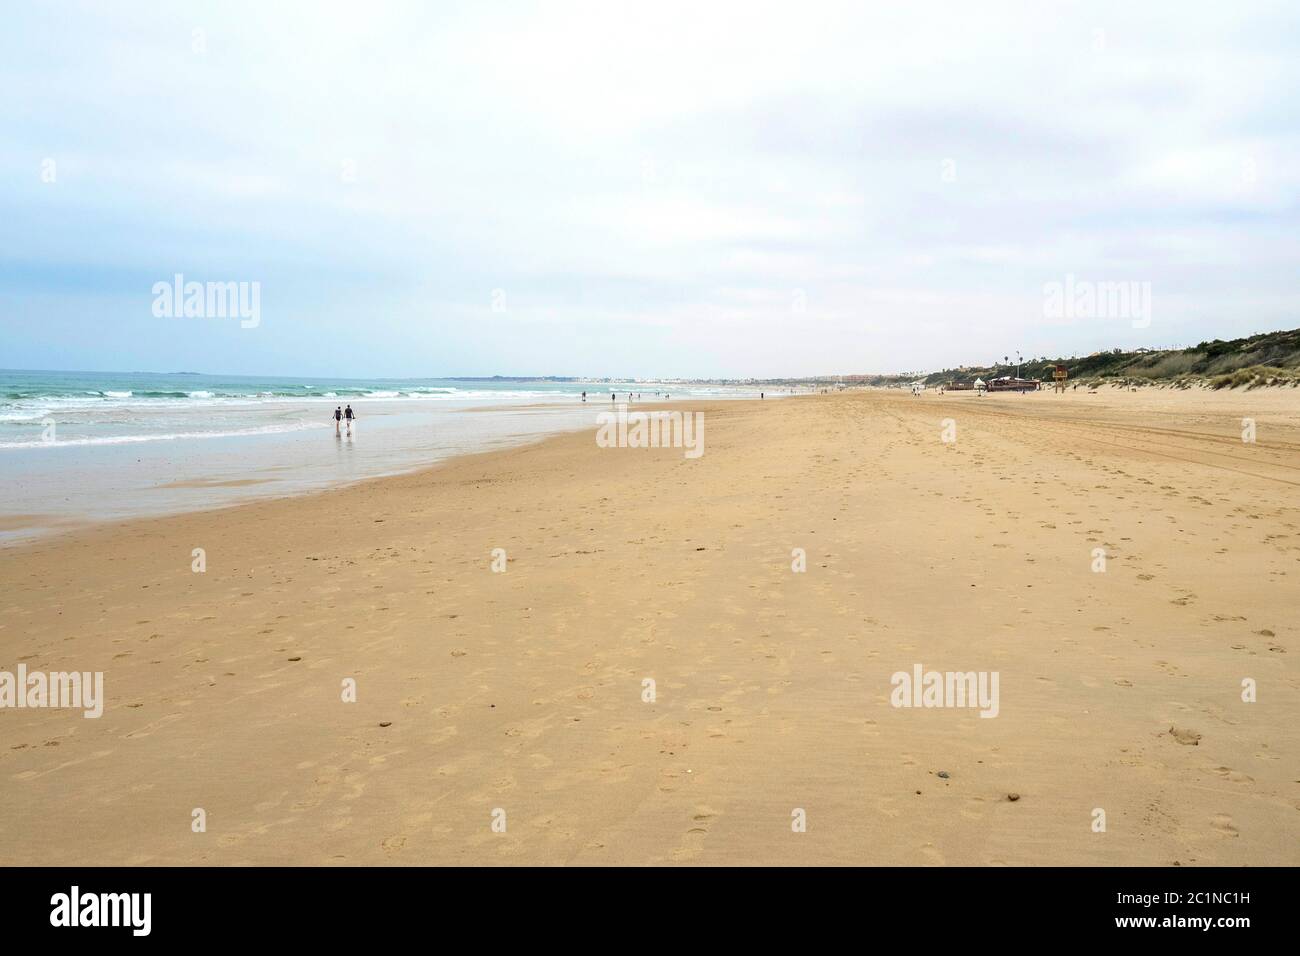 Spain, Chiclana de la Frontera - Playa del Puerco Stock Photo